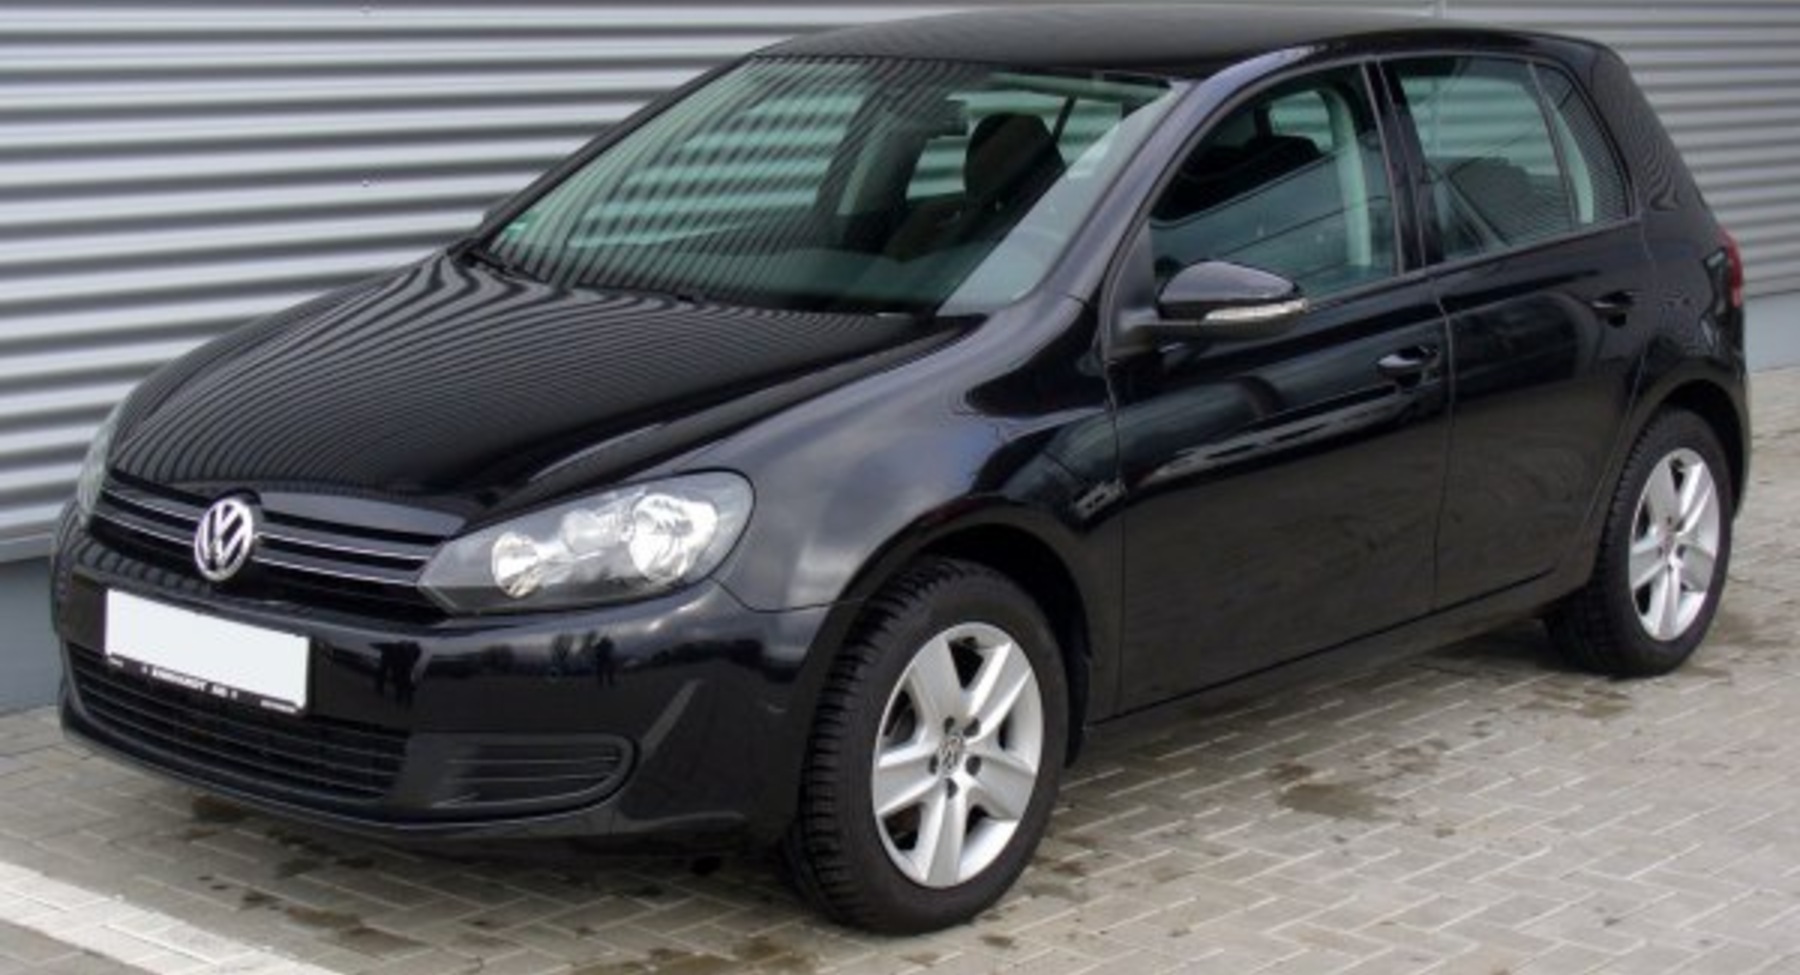 Volkswagen Golf VI (5-door) 1.6 TDI (105 Hp) BlueMotion 2009, 2010, 2011, 2012 